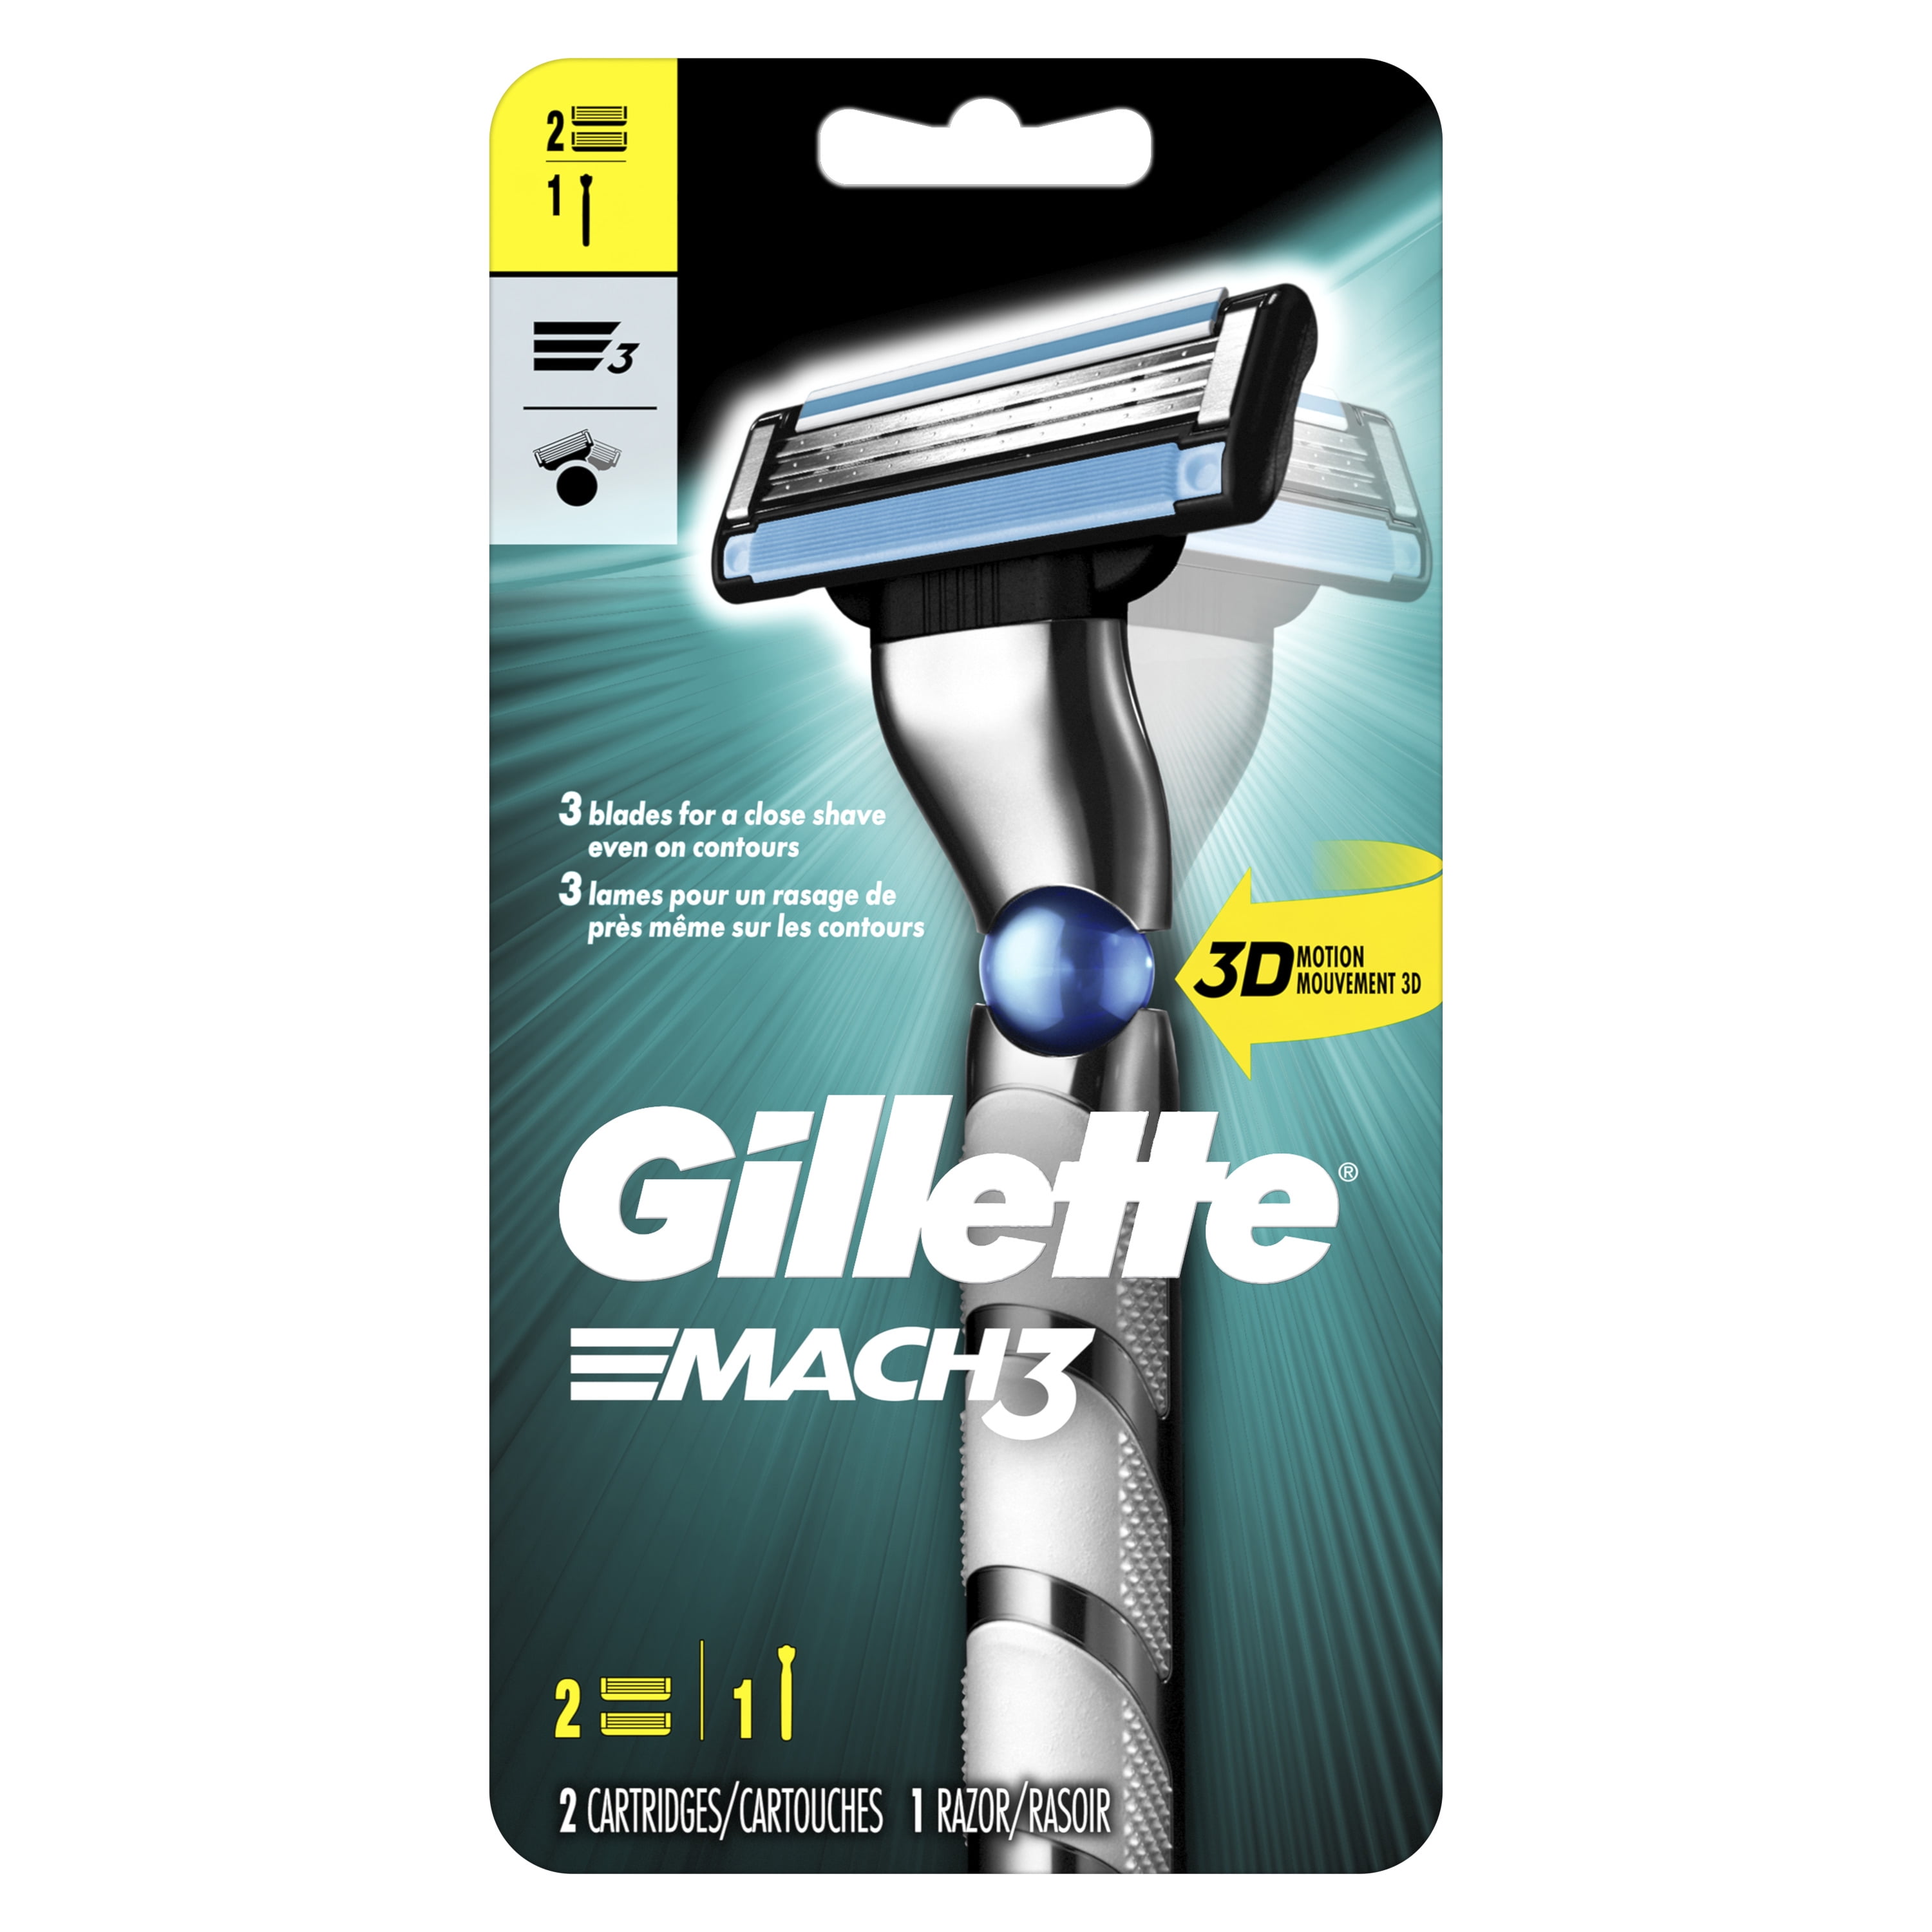 Gillette 3D Men's Handle and 2 Blade Refills Walmart.com